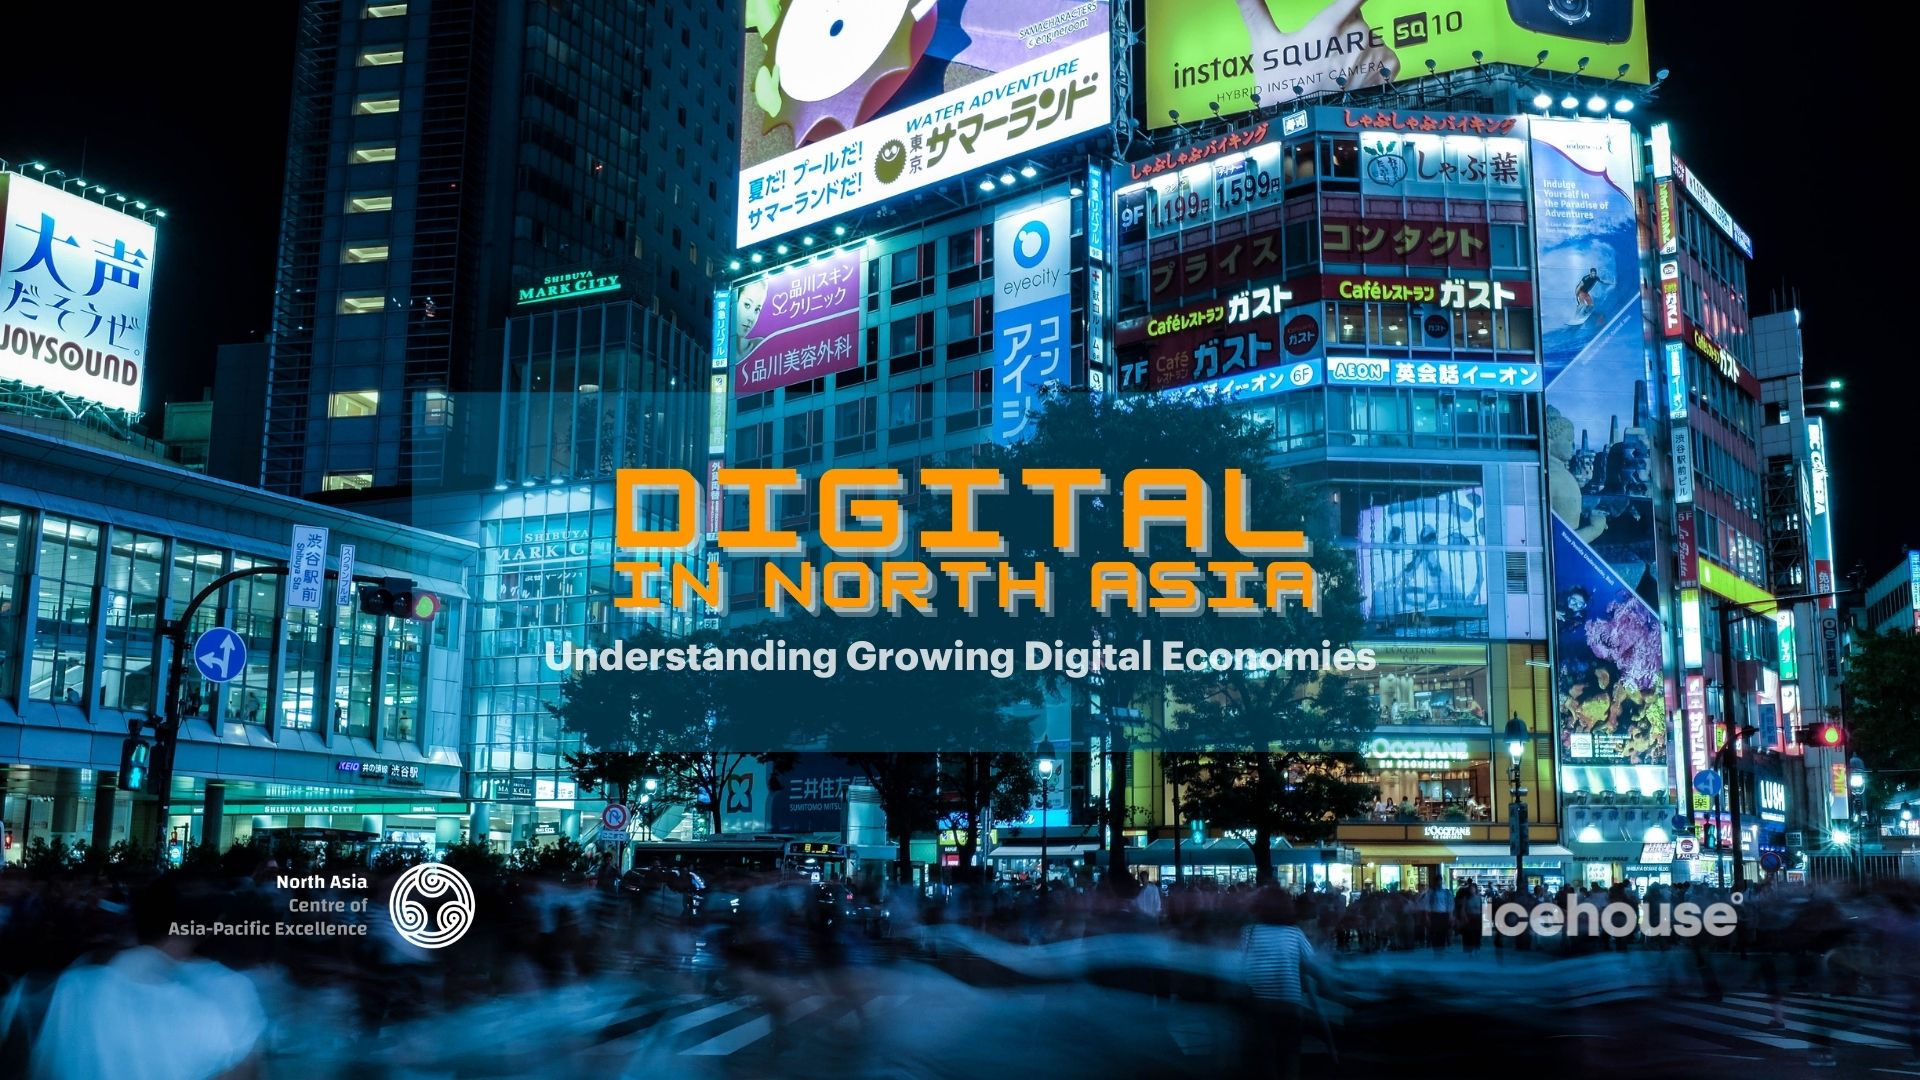 Icehouse workshop: Digital In North Asia - Understanding Growing Digital Economies